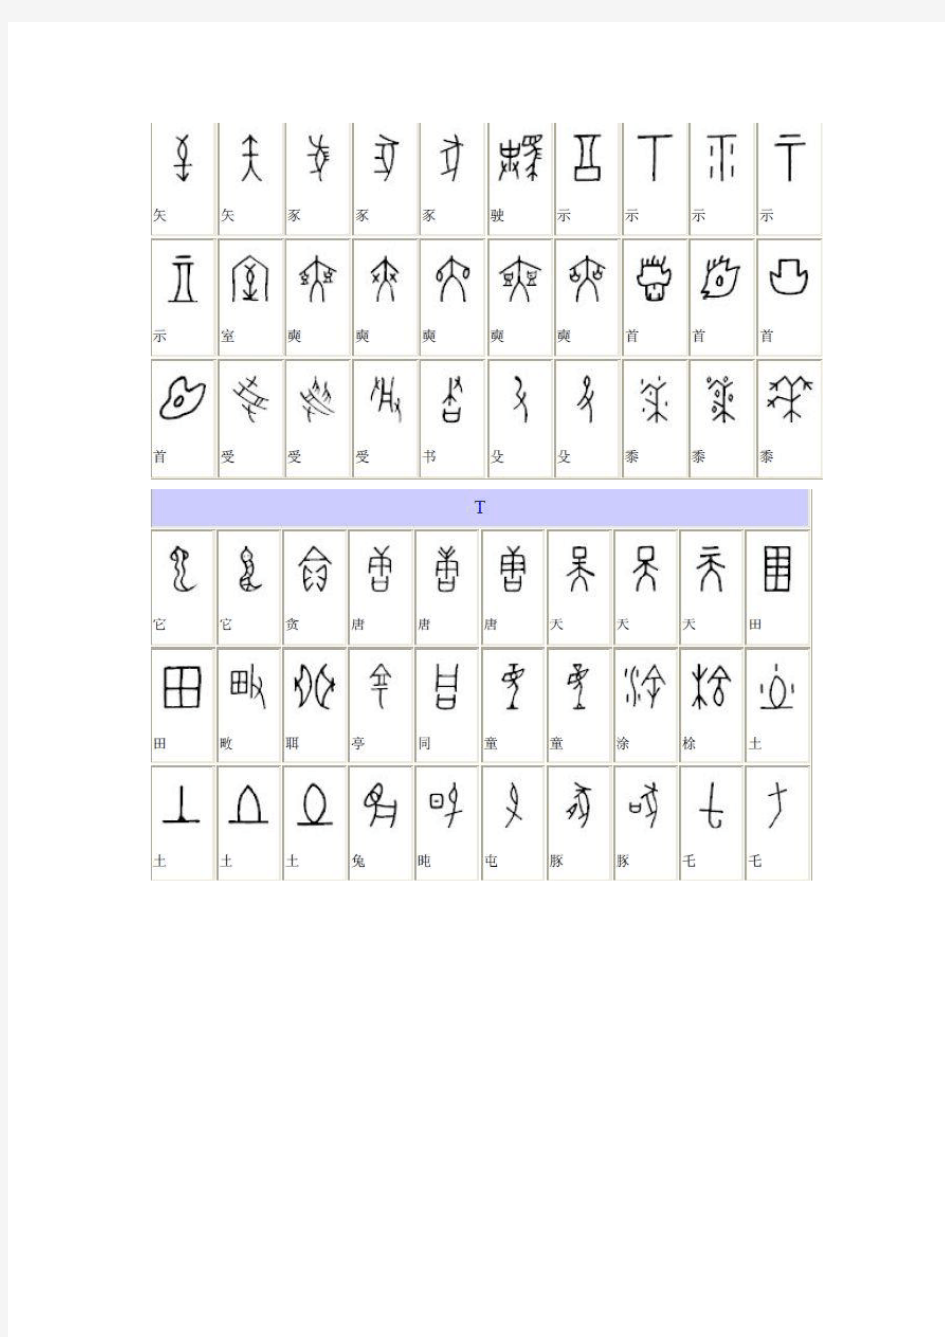 甲骨文与现代汉字对照表.